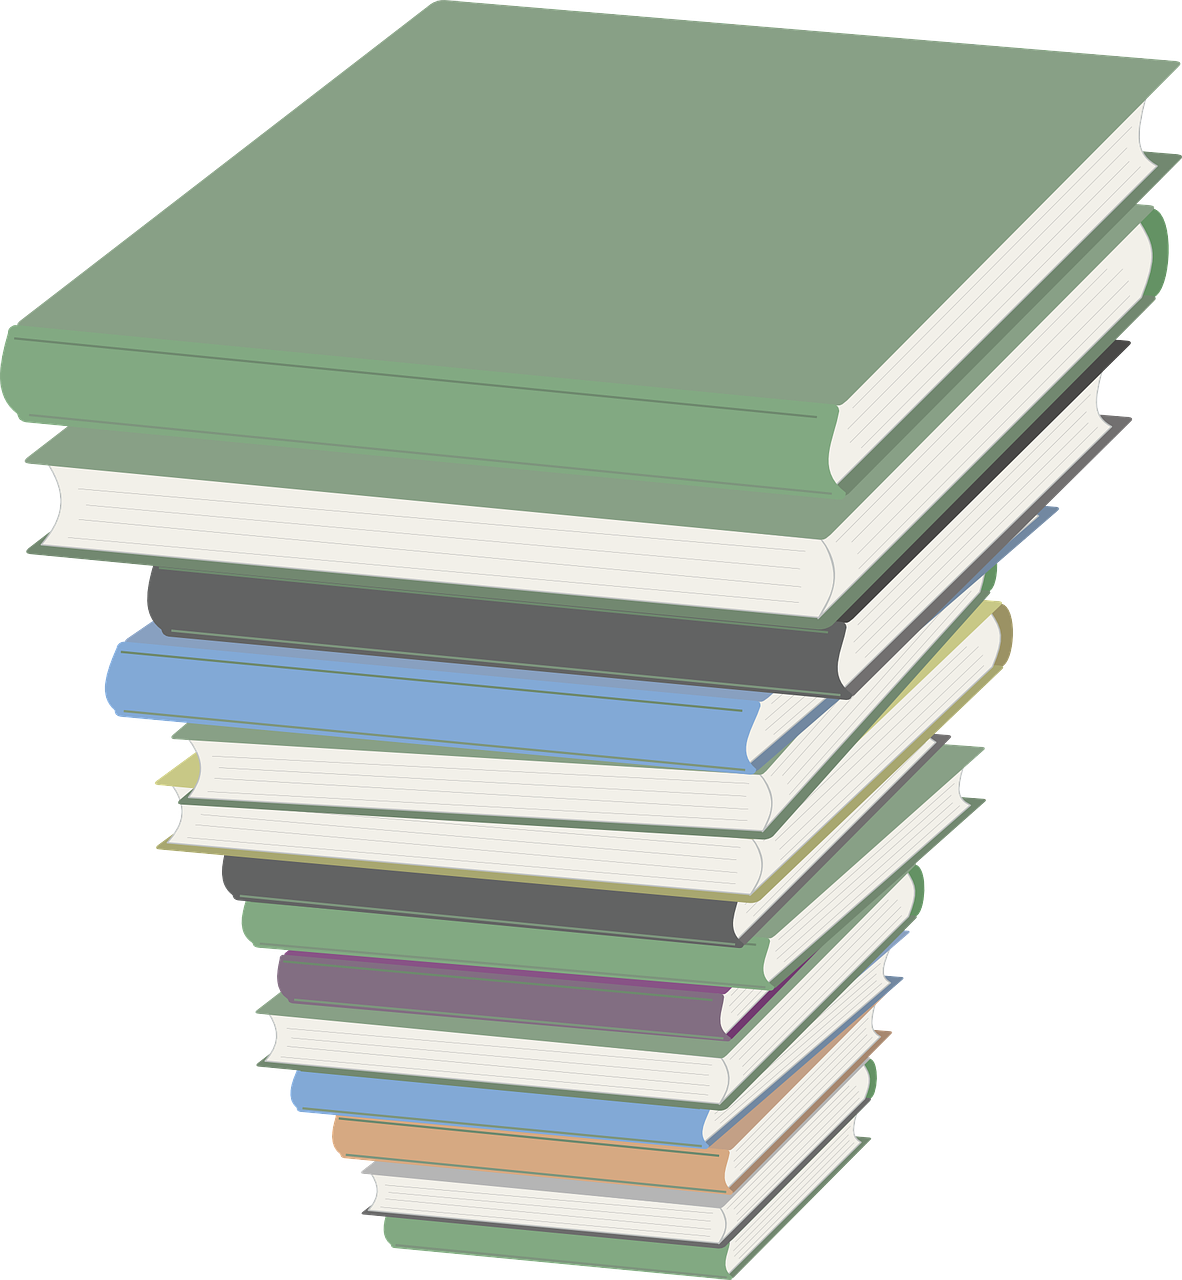 Knygos, Krūva, Švietimas, Skaitymas, Biblioteka, Literatūra, Mokymasis, Krūva, Knyga, Kolegija